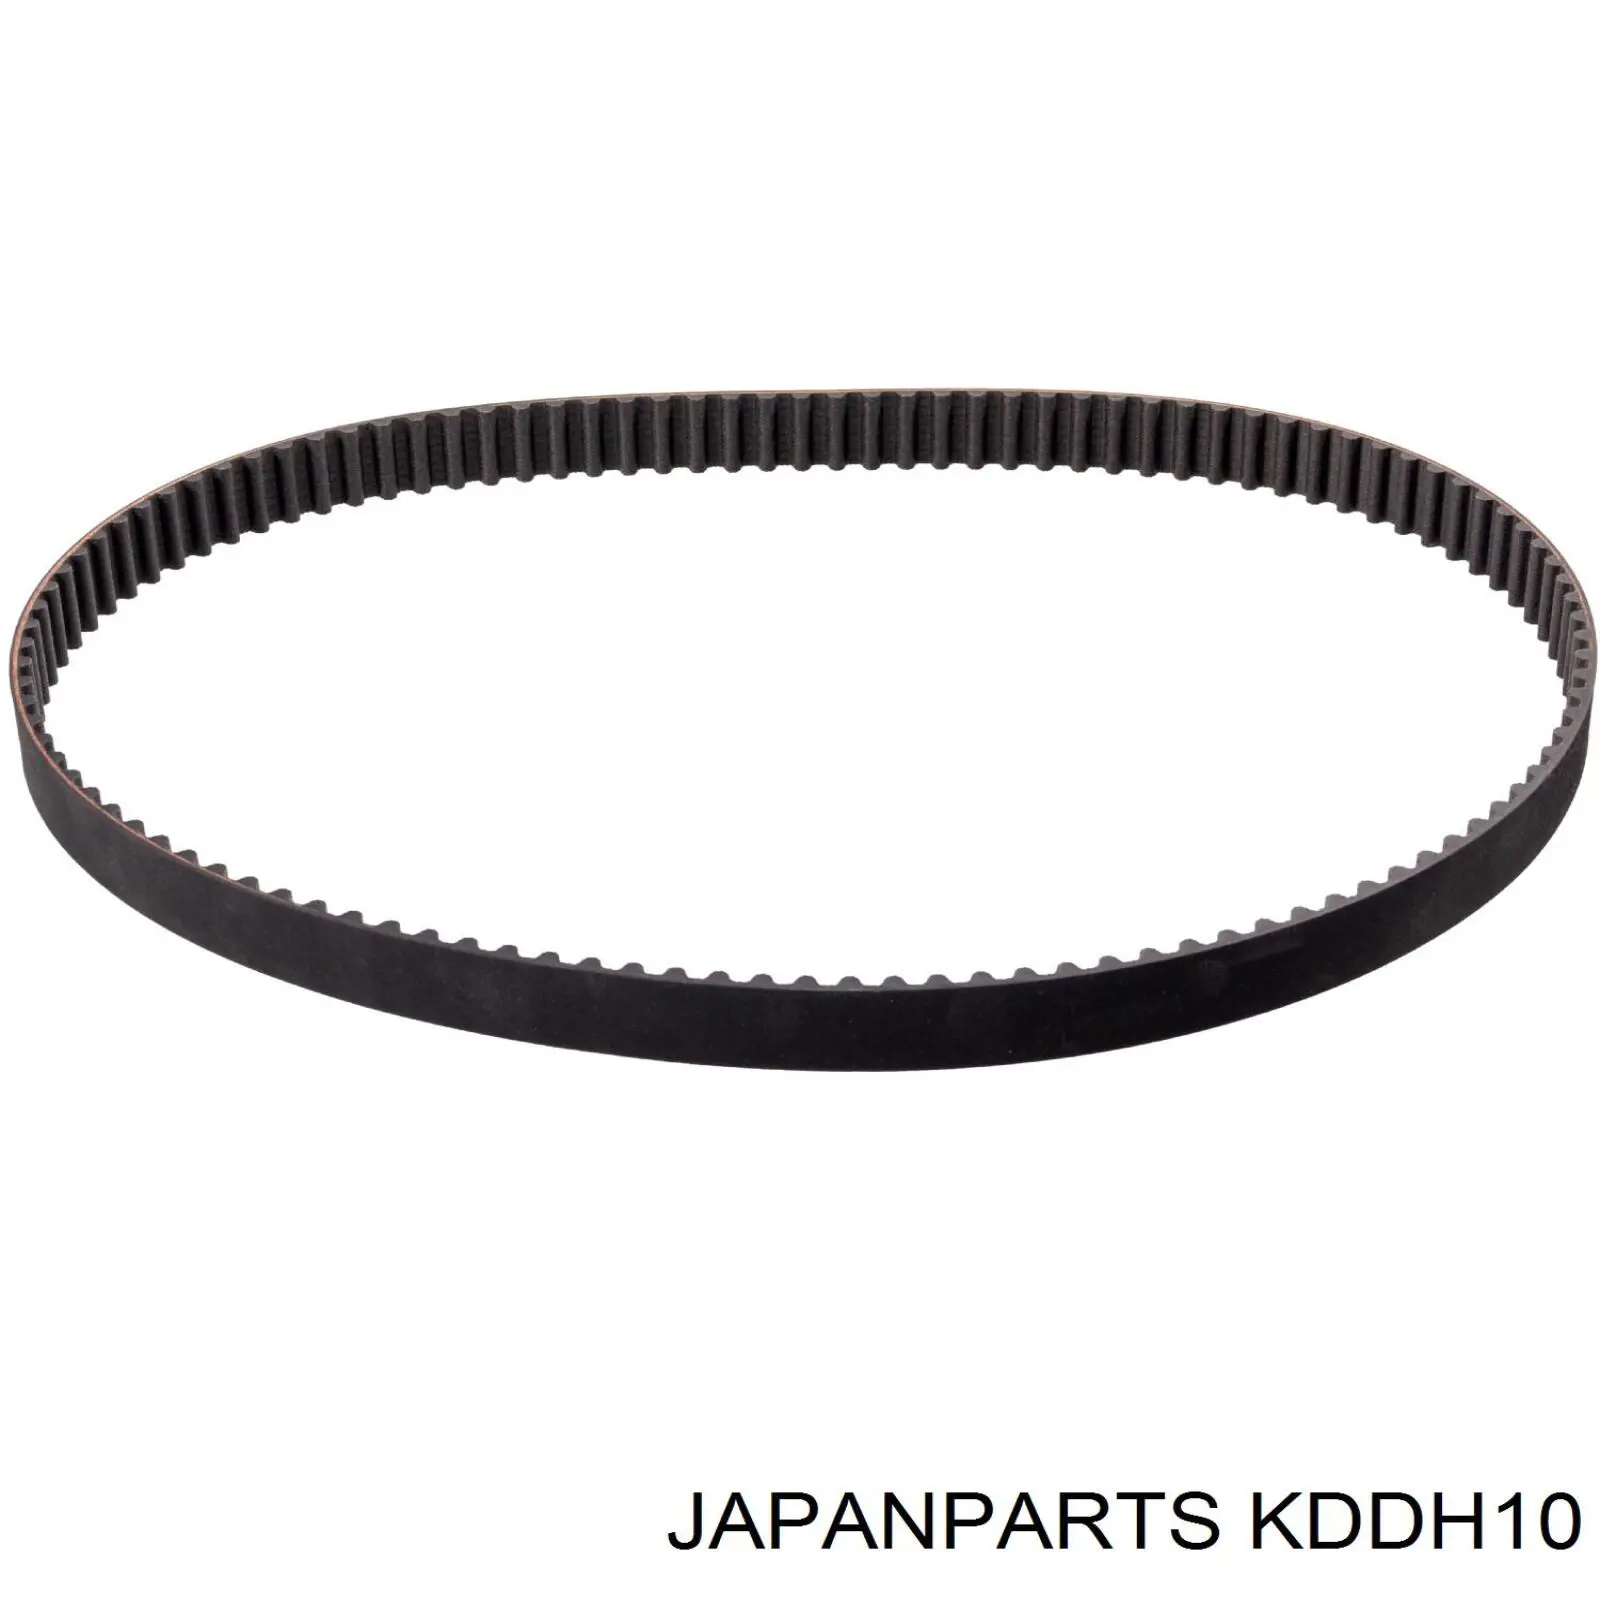 Kit correa de distribución JAPANPARTS KDDH10